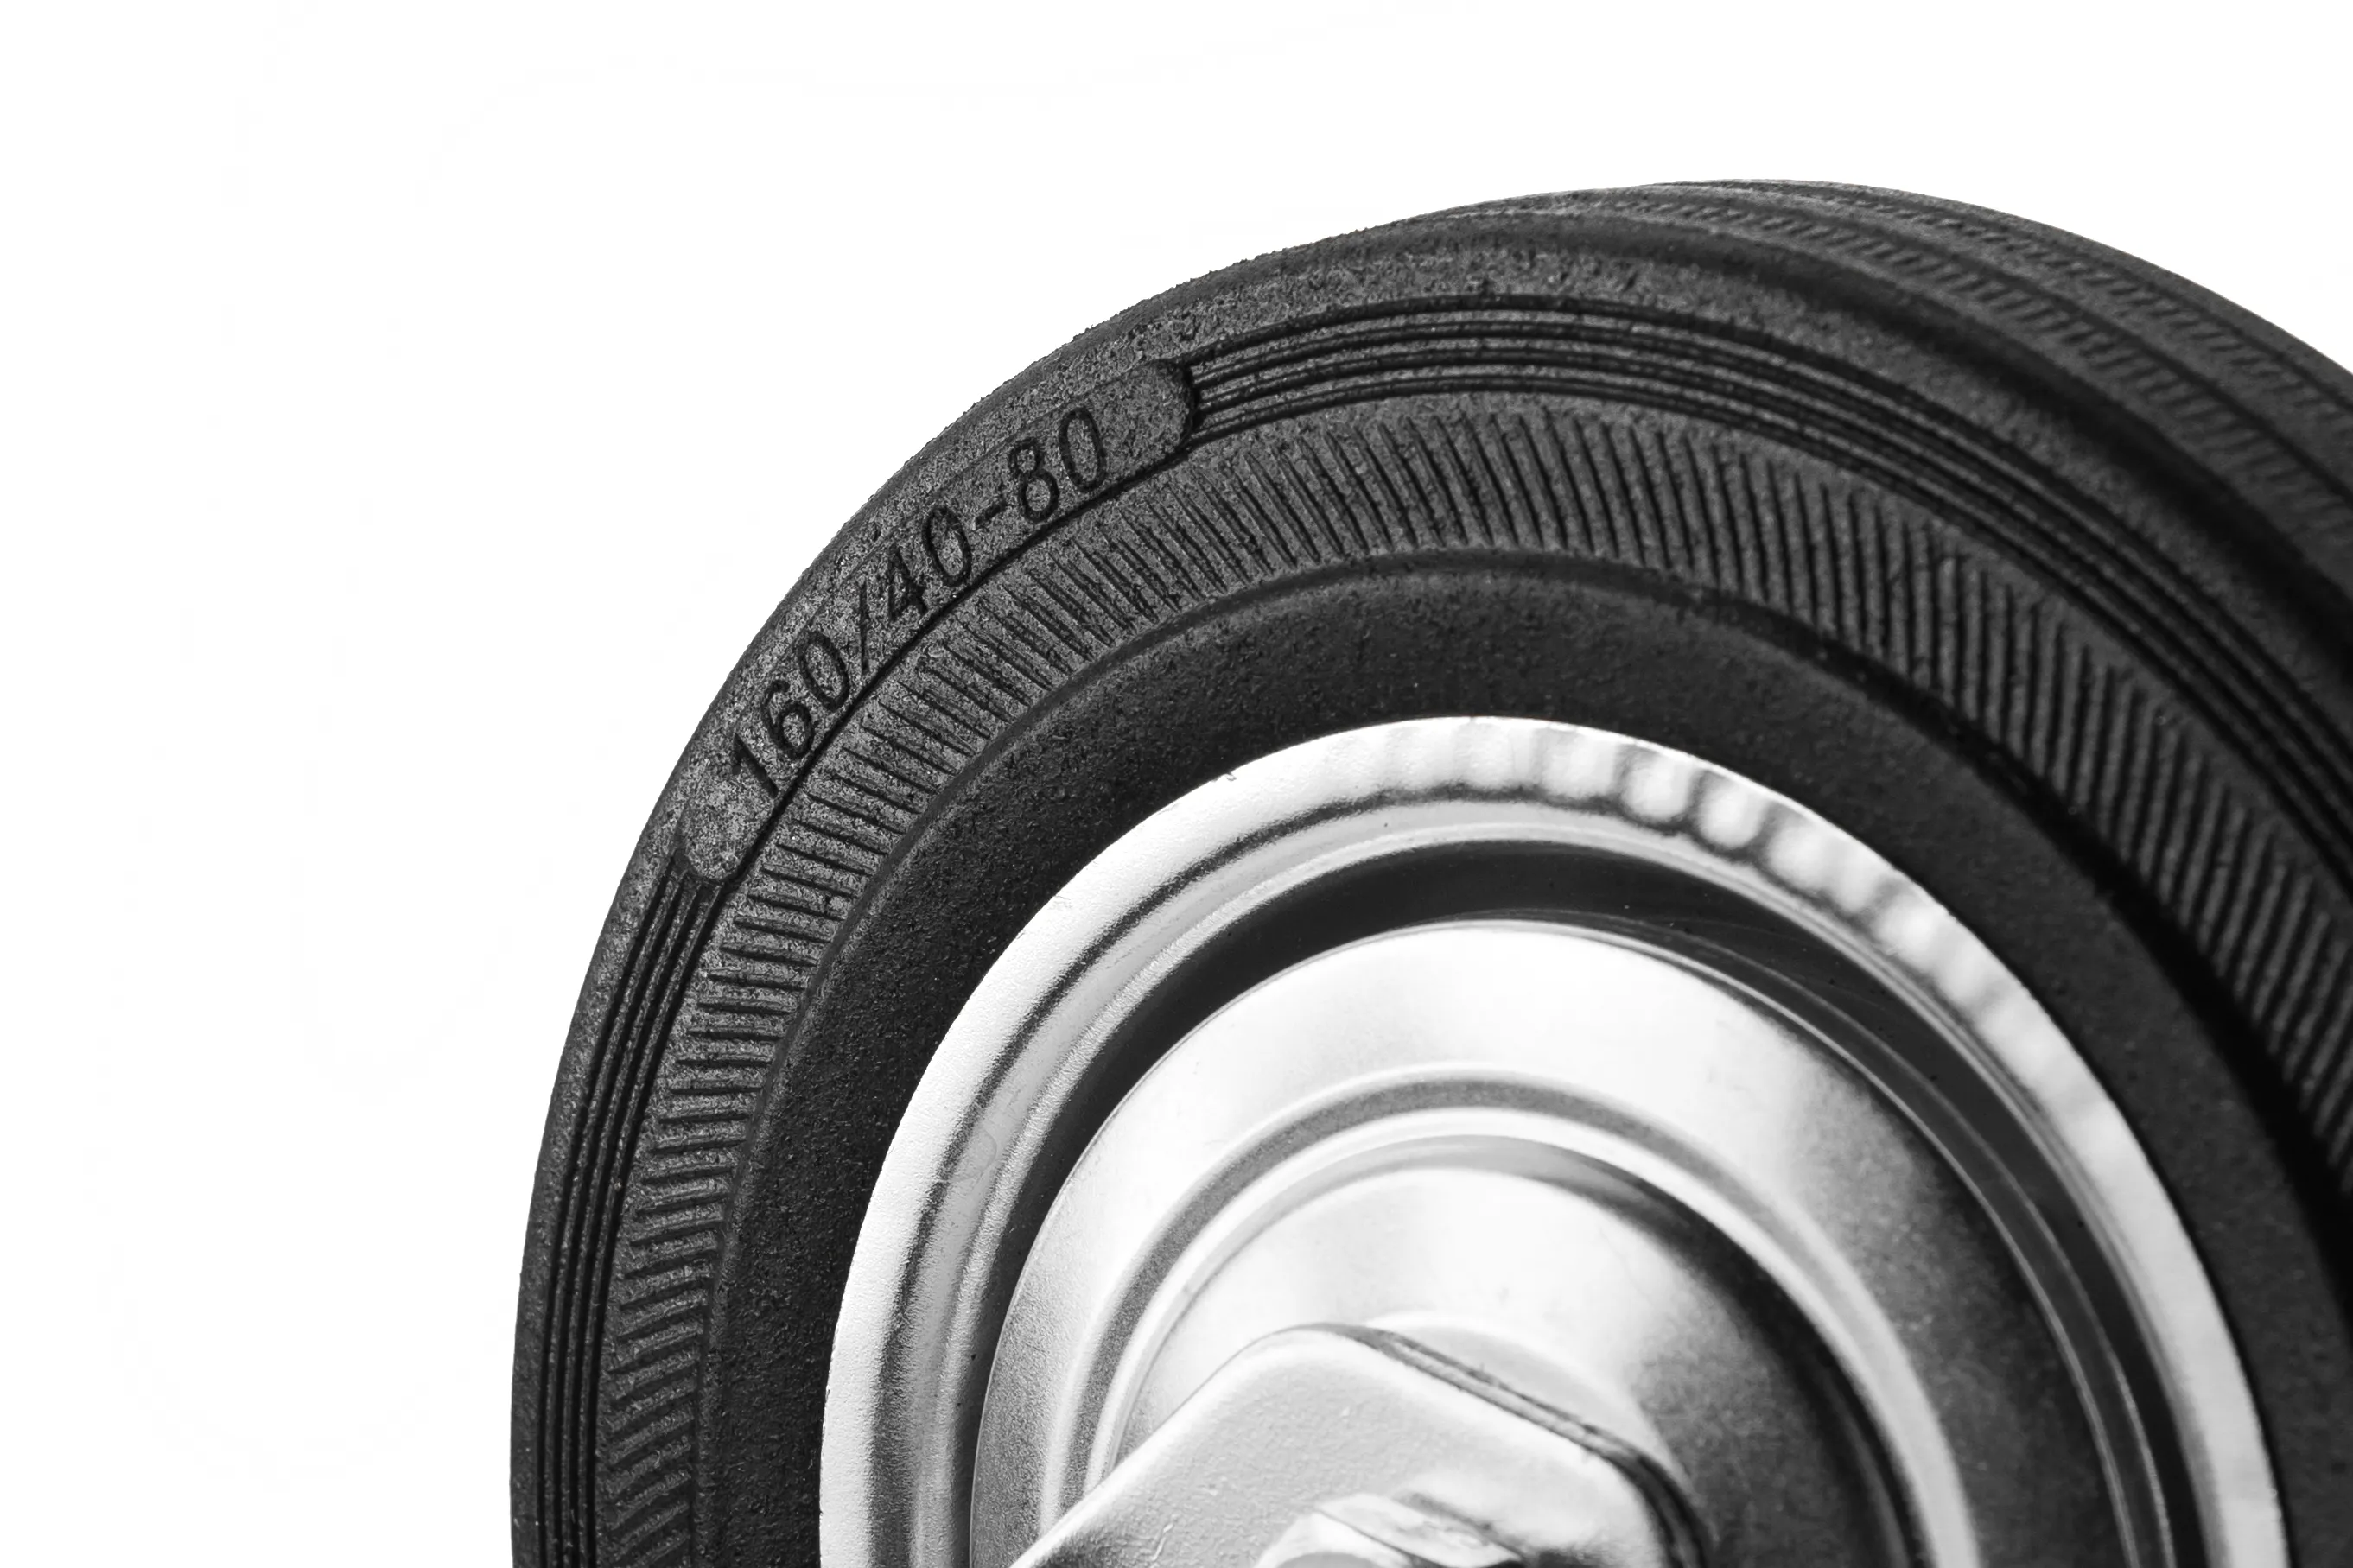 Промышленное колесо, диаметр 160мм, крепление под болт 16 мм, поворотная опора, черная резина, роликовый подшипник - SCh 63